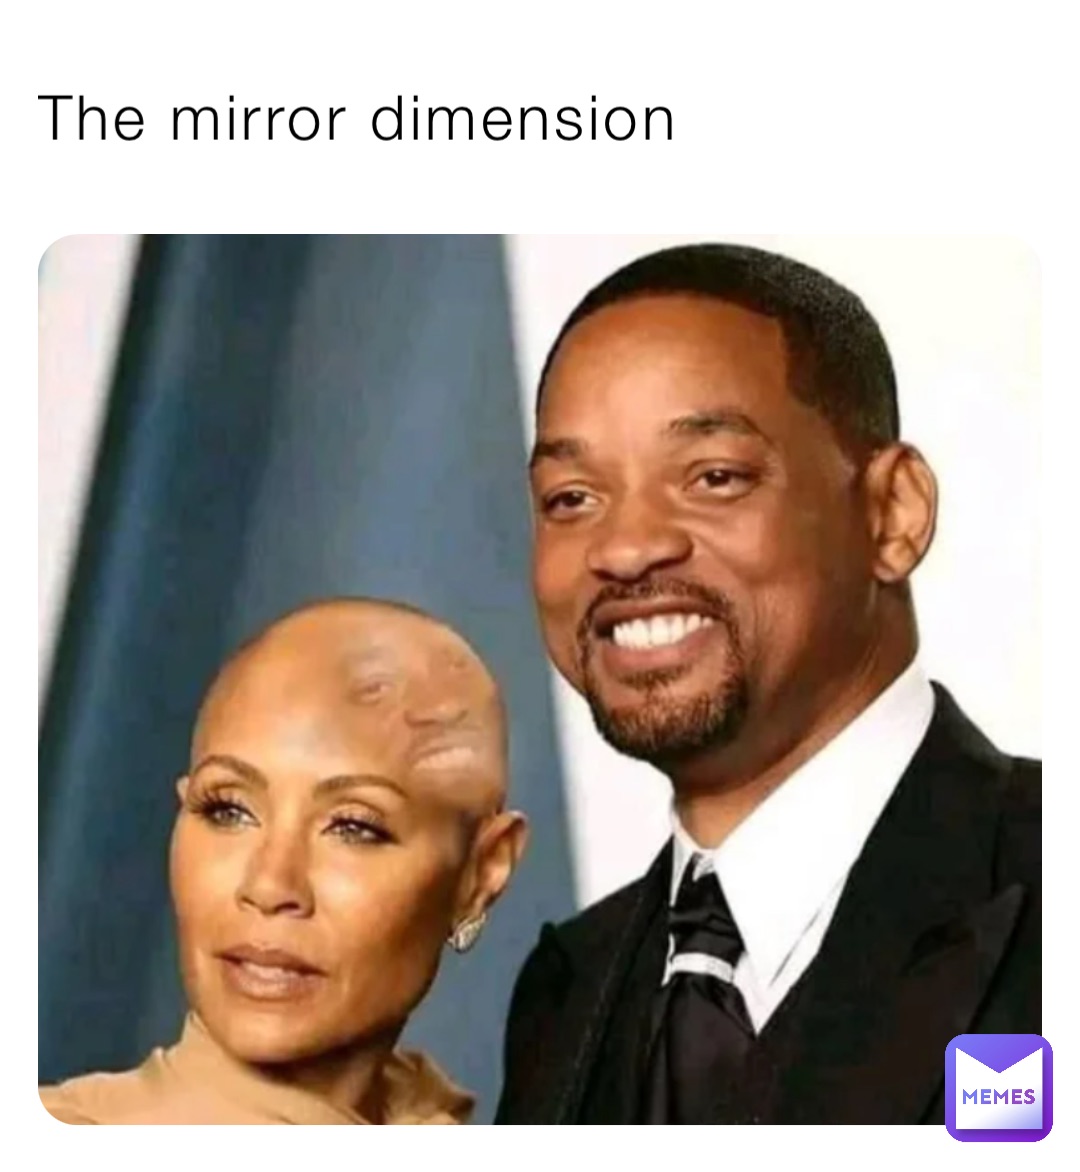 The mirror dimension